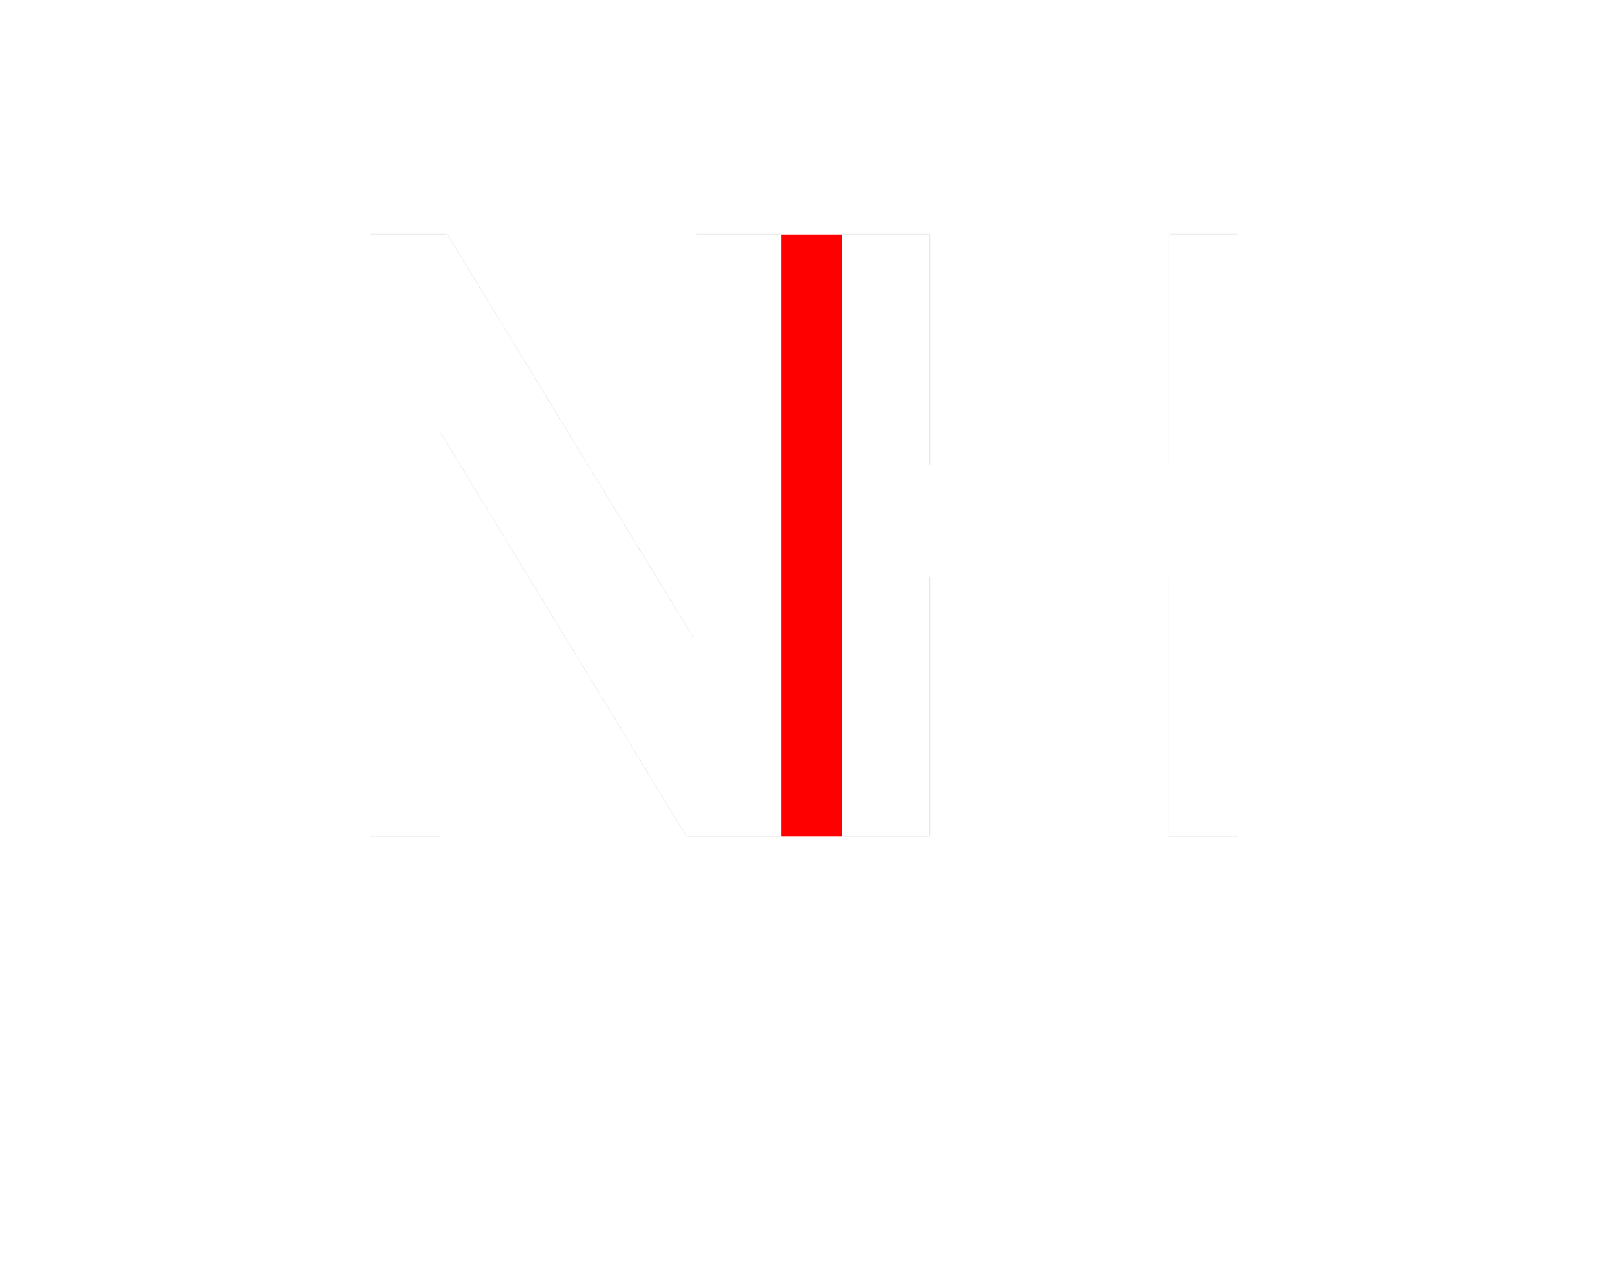 Nooremy Hussain